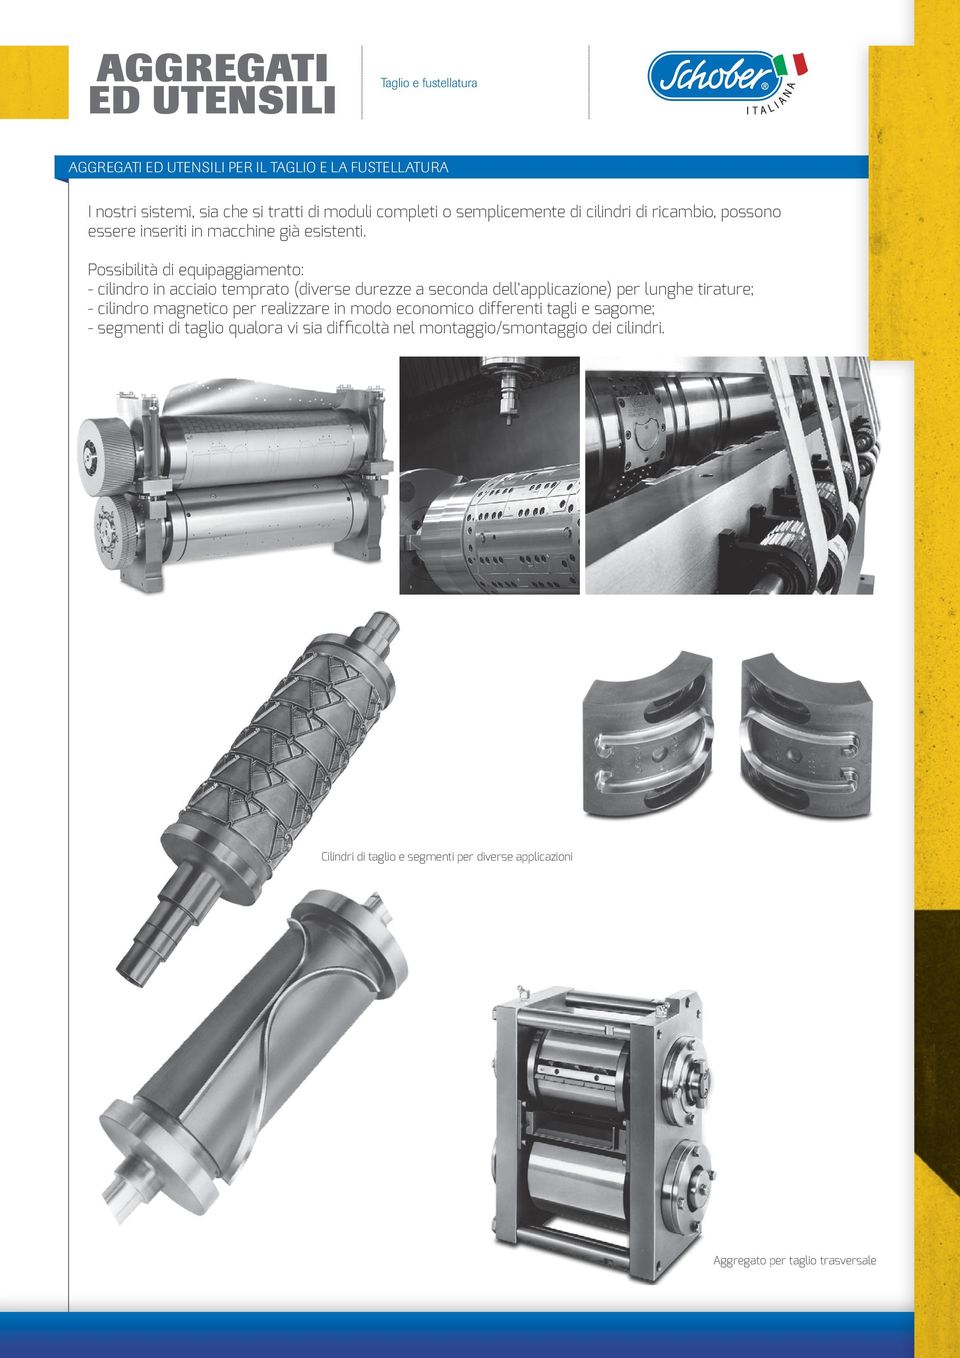 Possibilità di equipaggiamento: - cilindro in acciaio temprato (diverse durezze a seconda dell applicazione) per lunghe tirature; - cilindro magnetico per